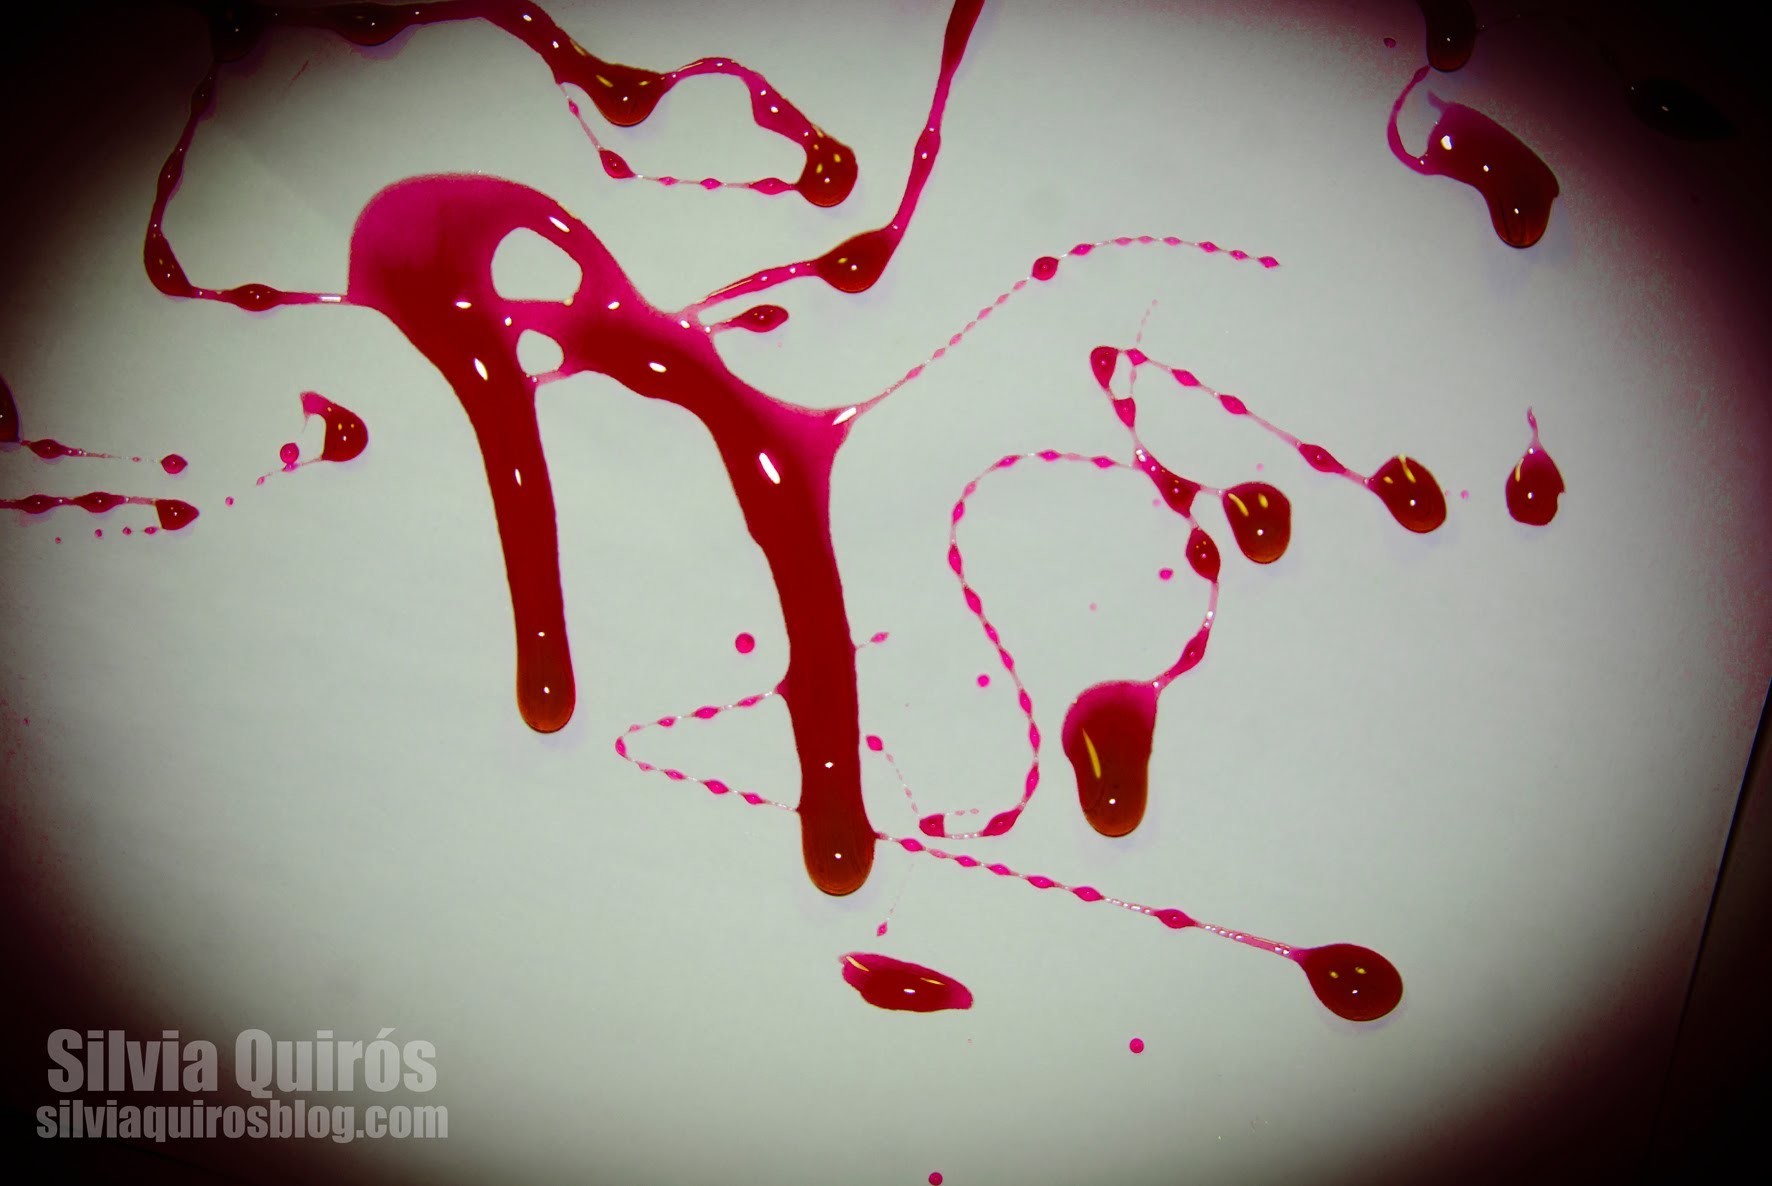 Como hacer sangre artificial en casa, FX #6 | Silvia Quiros